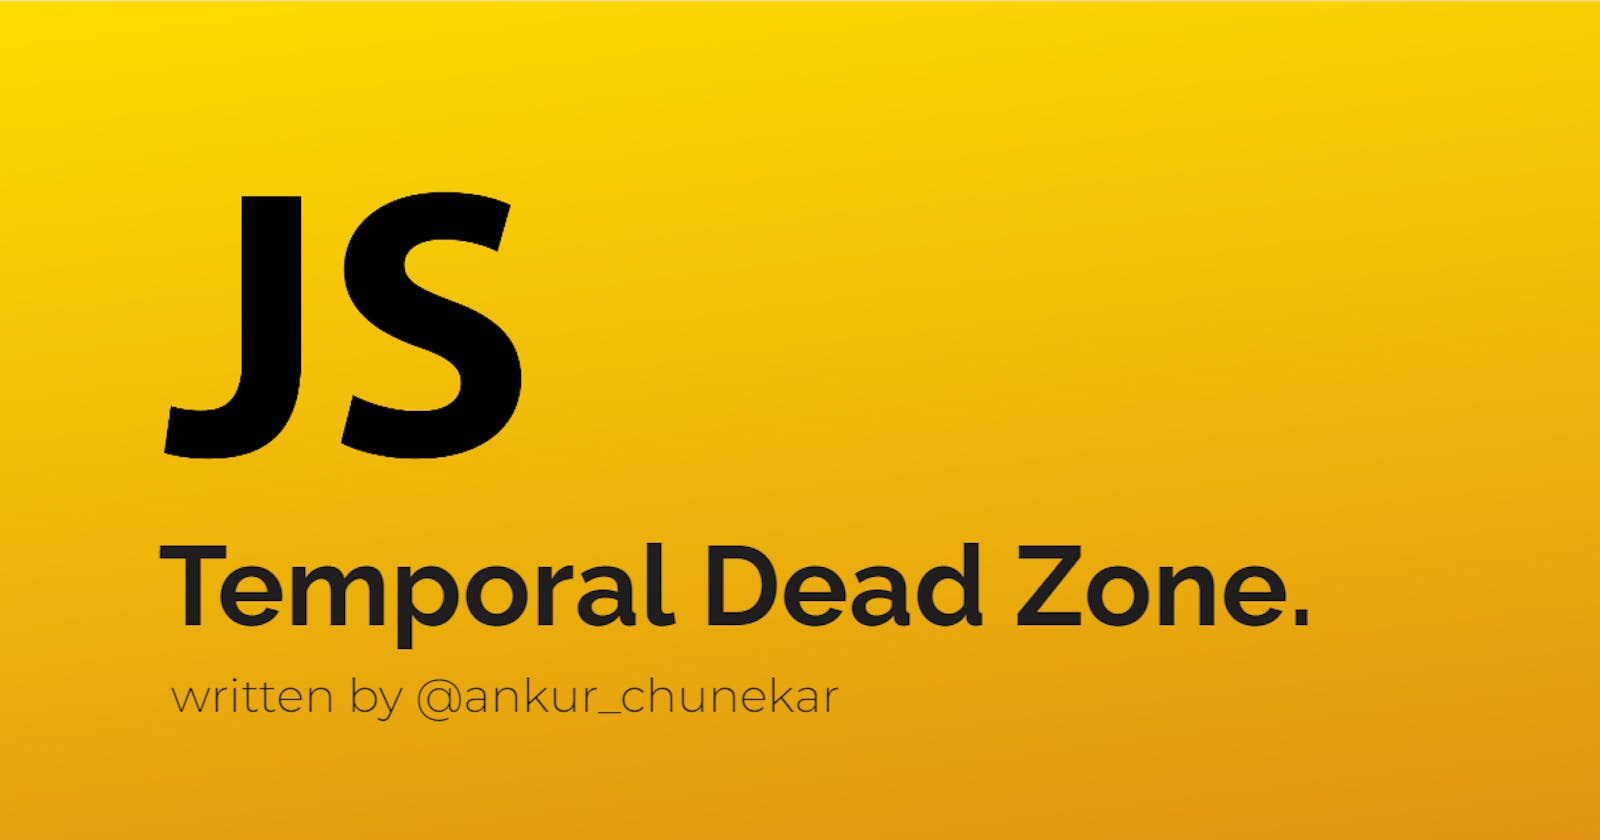 The Temporal Dead Zone.